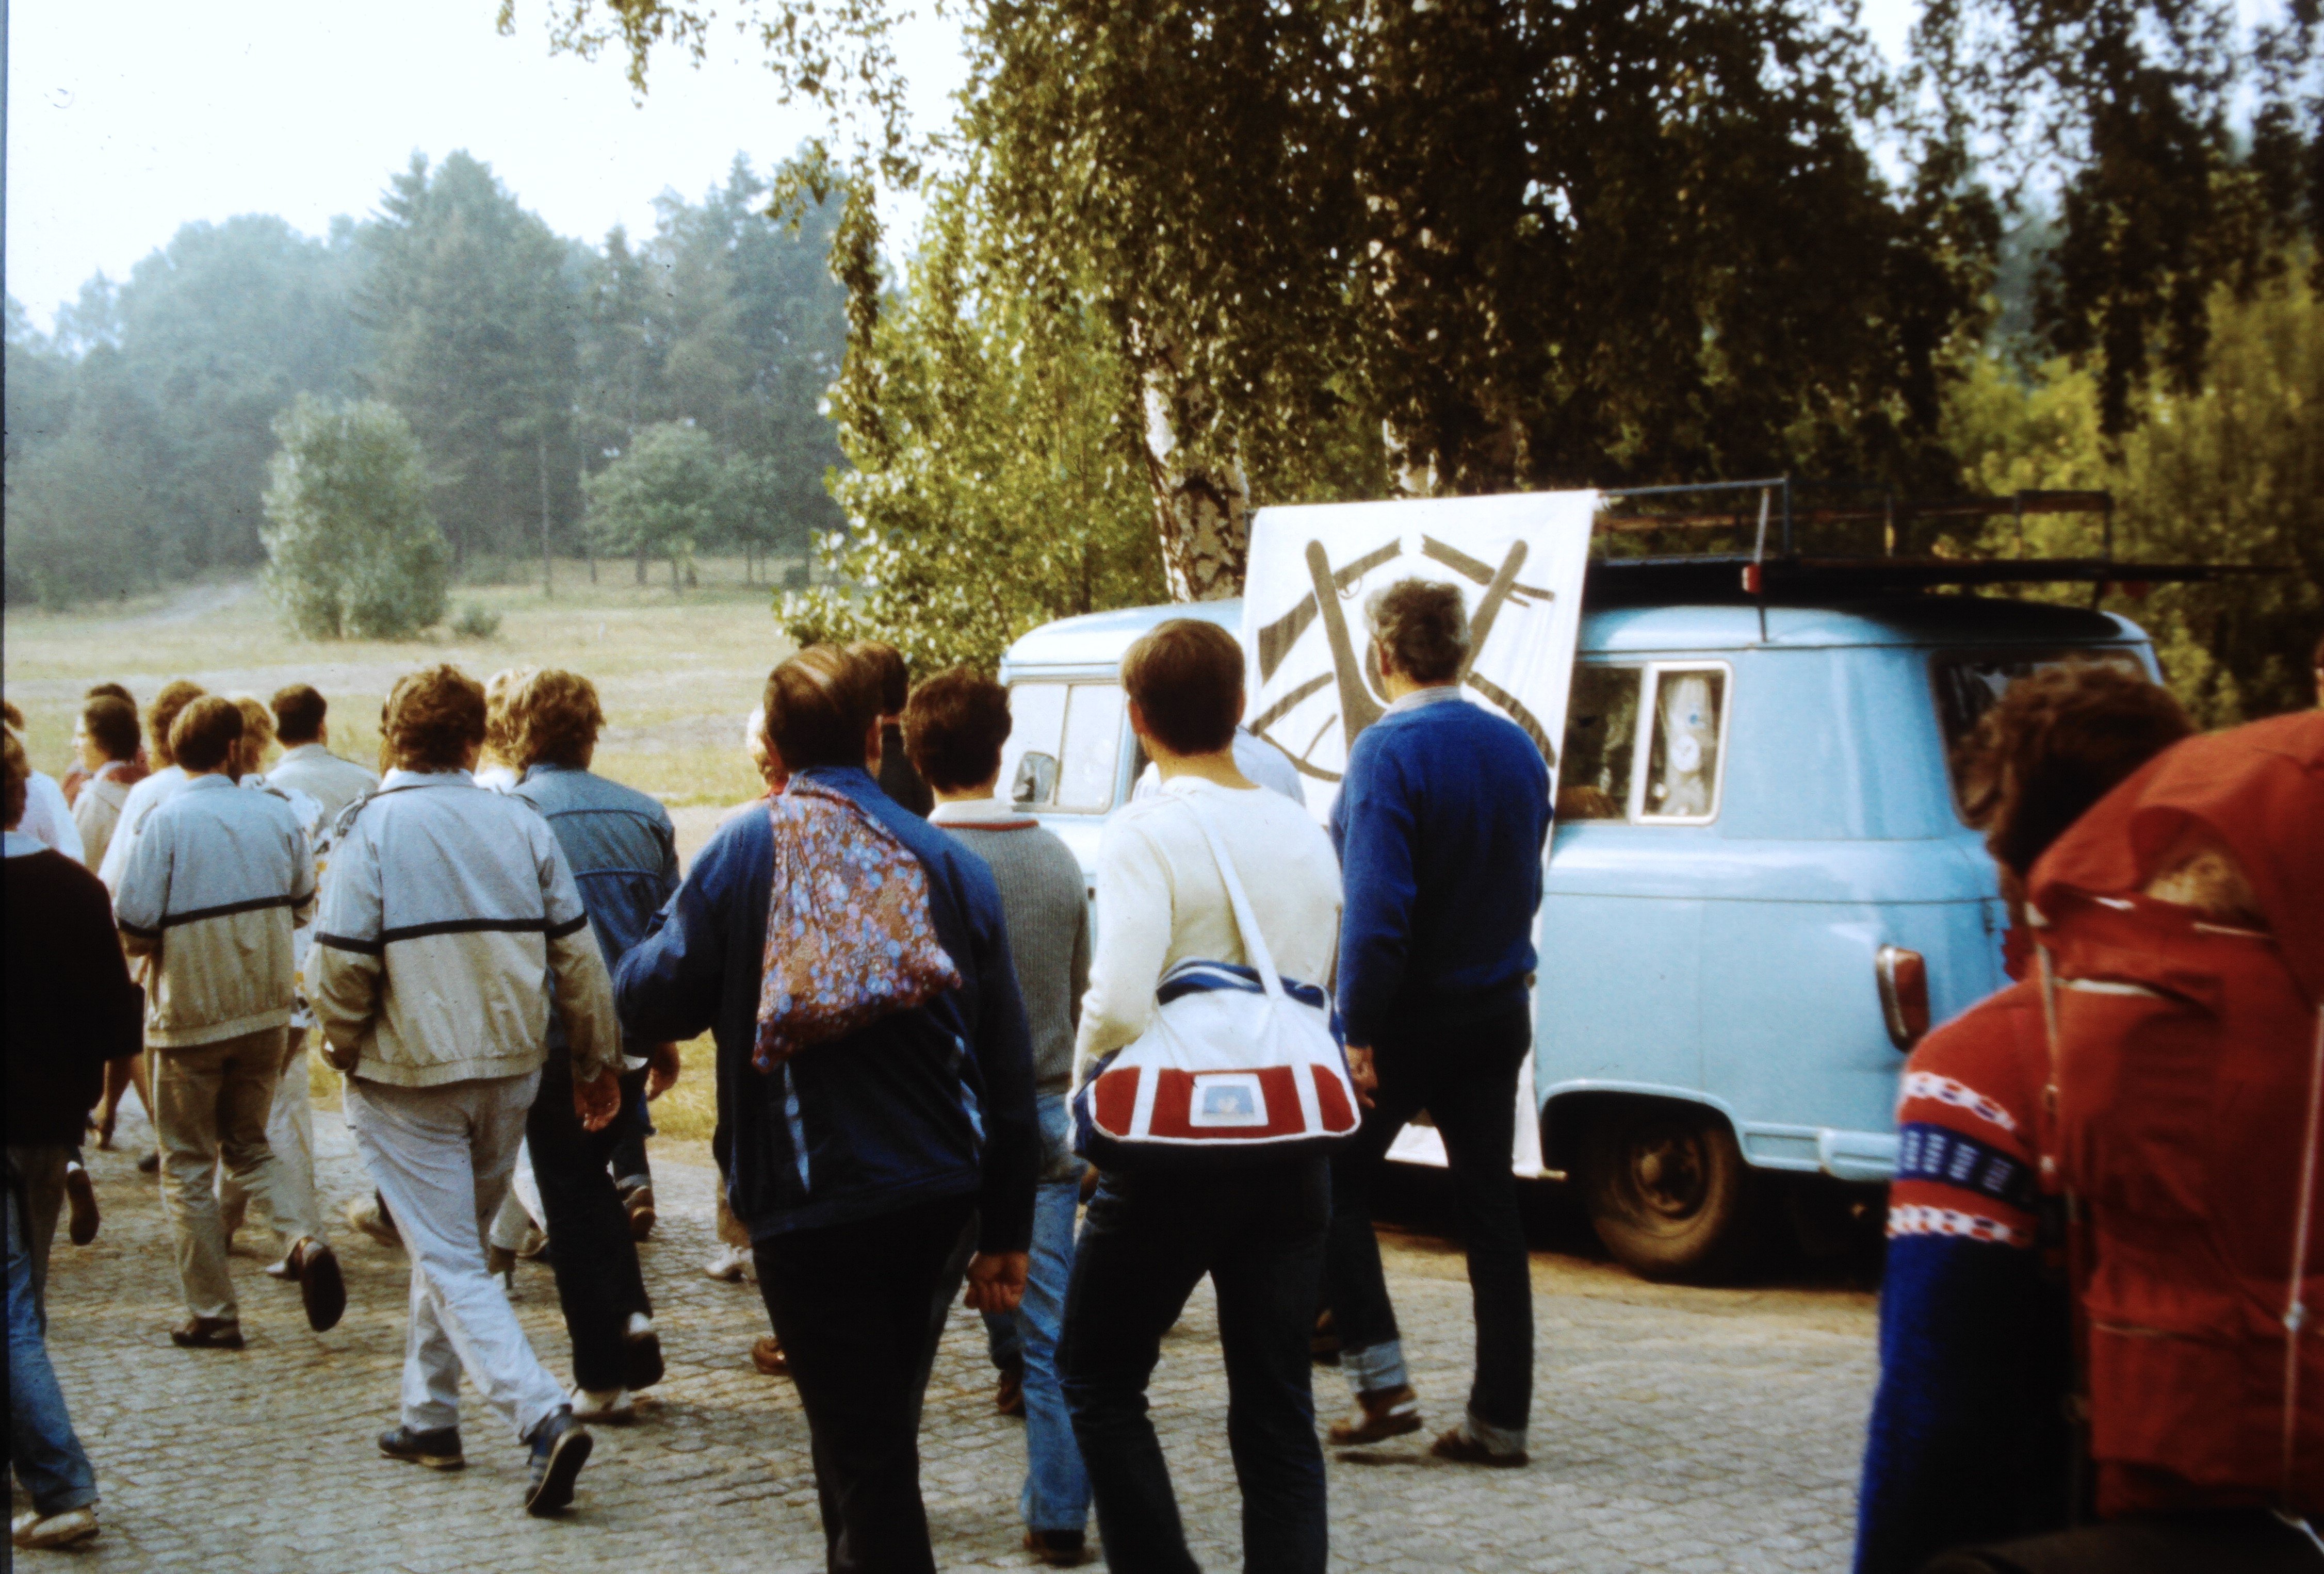 Olof-Palme-Marsch 1987: Teilnehmer vor dem Barkas mit Transparent: "Mann vor Weltkugel" (DDR Geschichtsmuseum im Dokumentationszentrum Perleberg CC BY-SA)